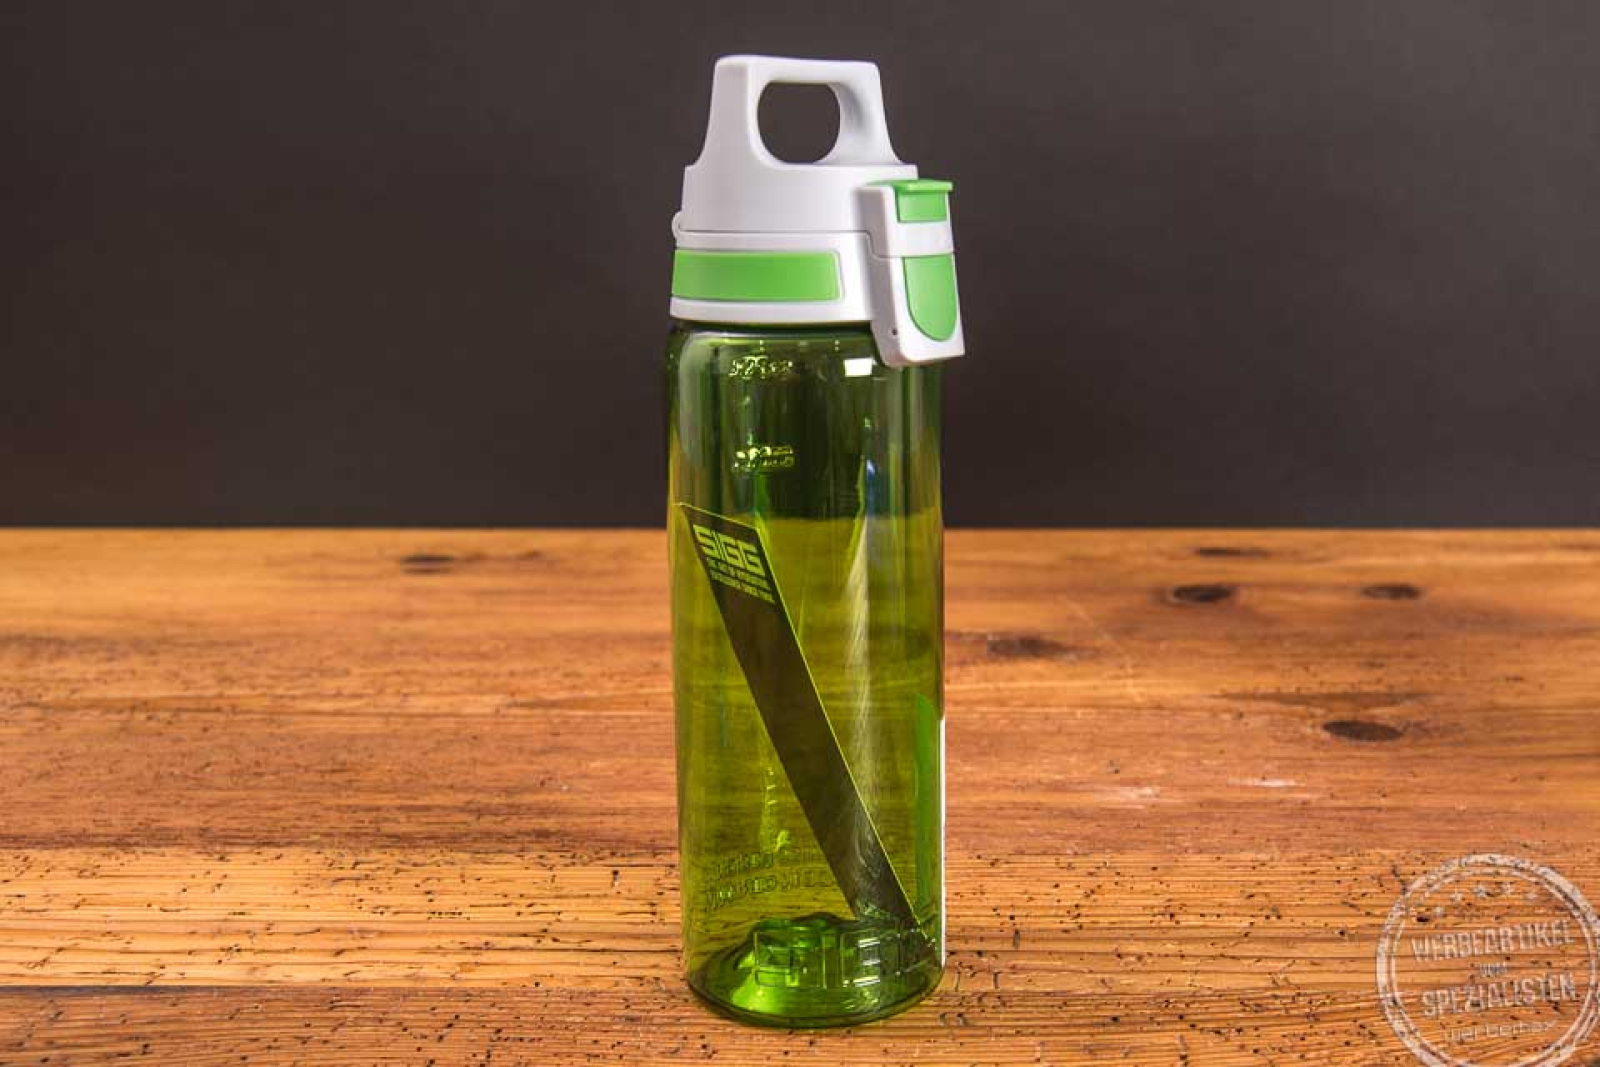 Stehende personalisierte Sigg Trinkflasche Total Color in der Farbe green als Werbeartikel.